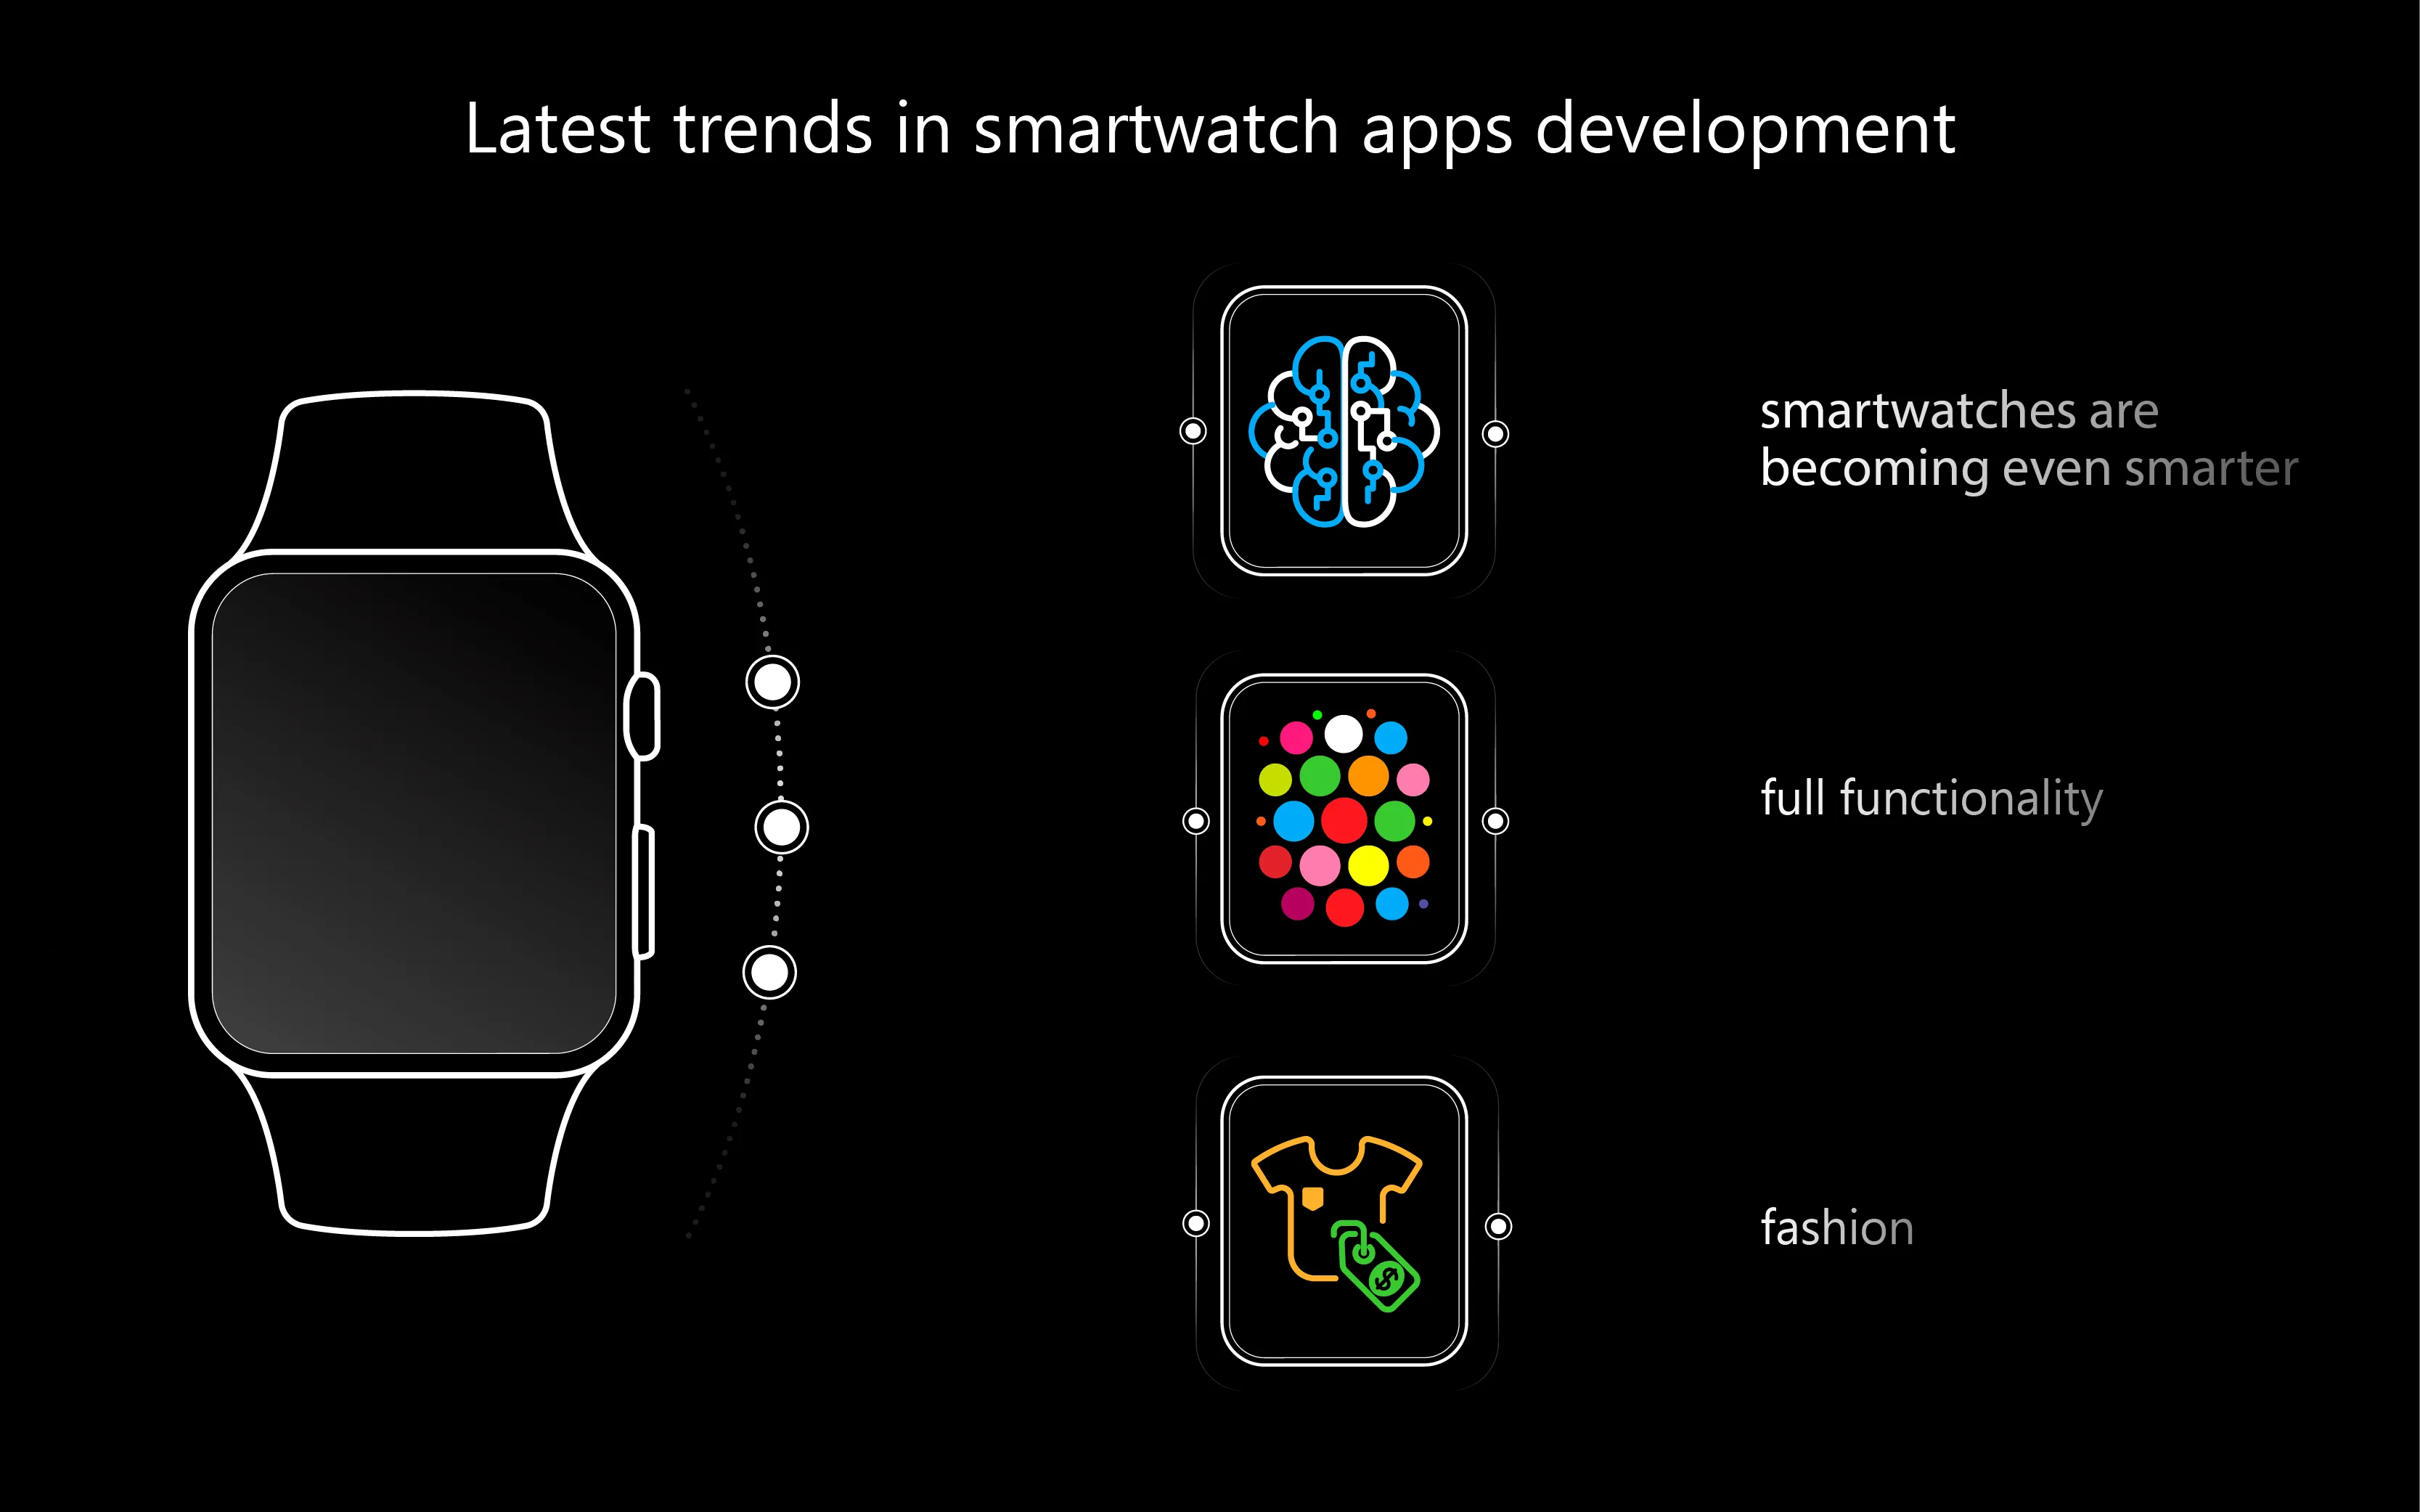 develop apple watch app